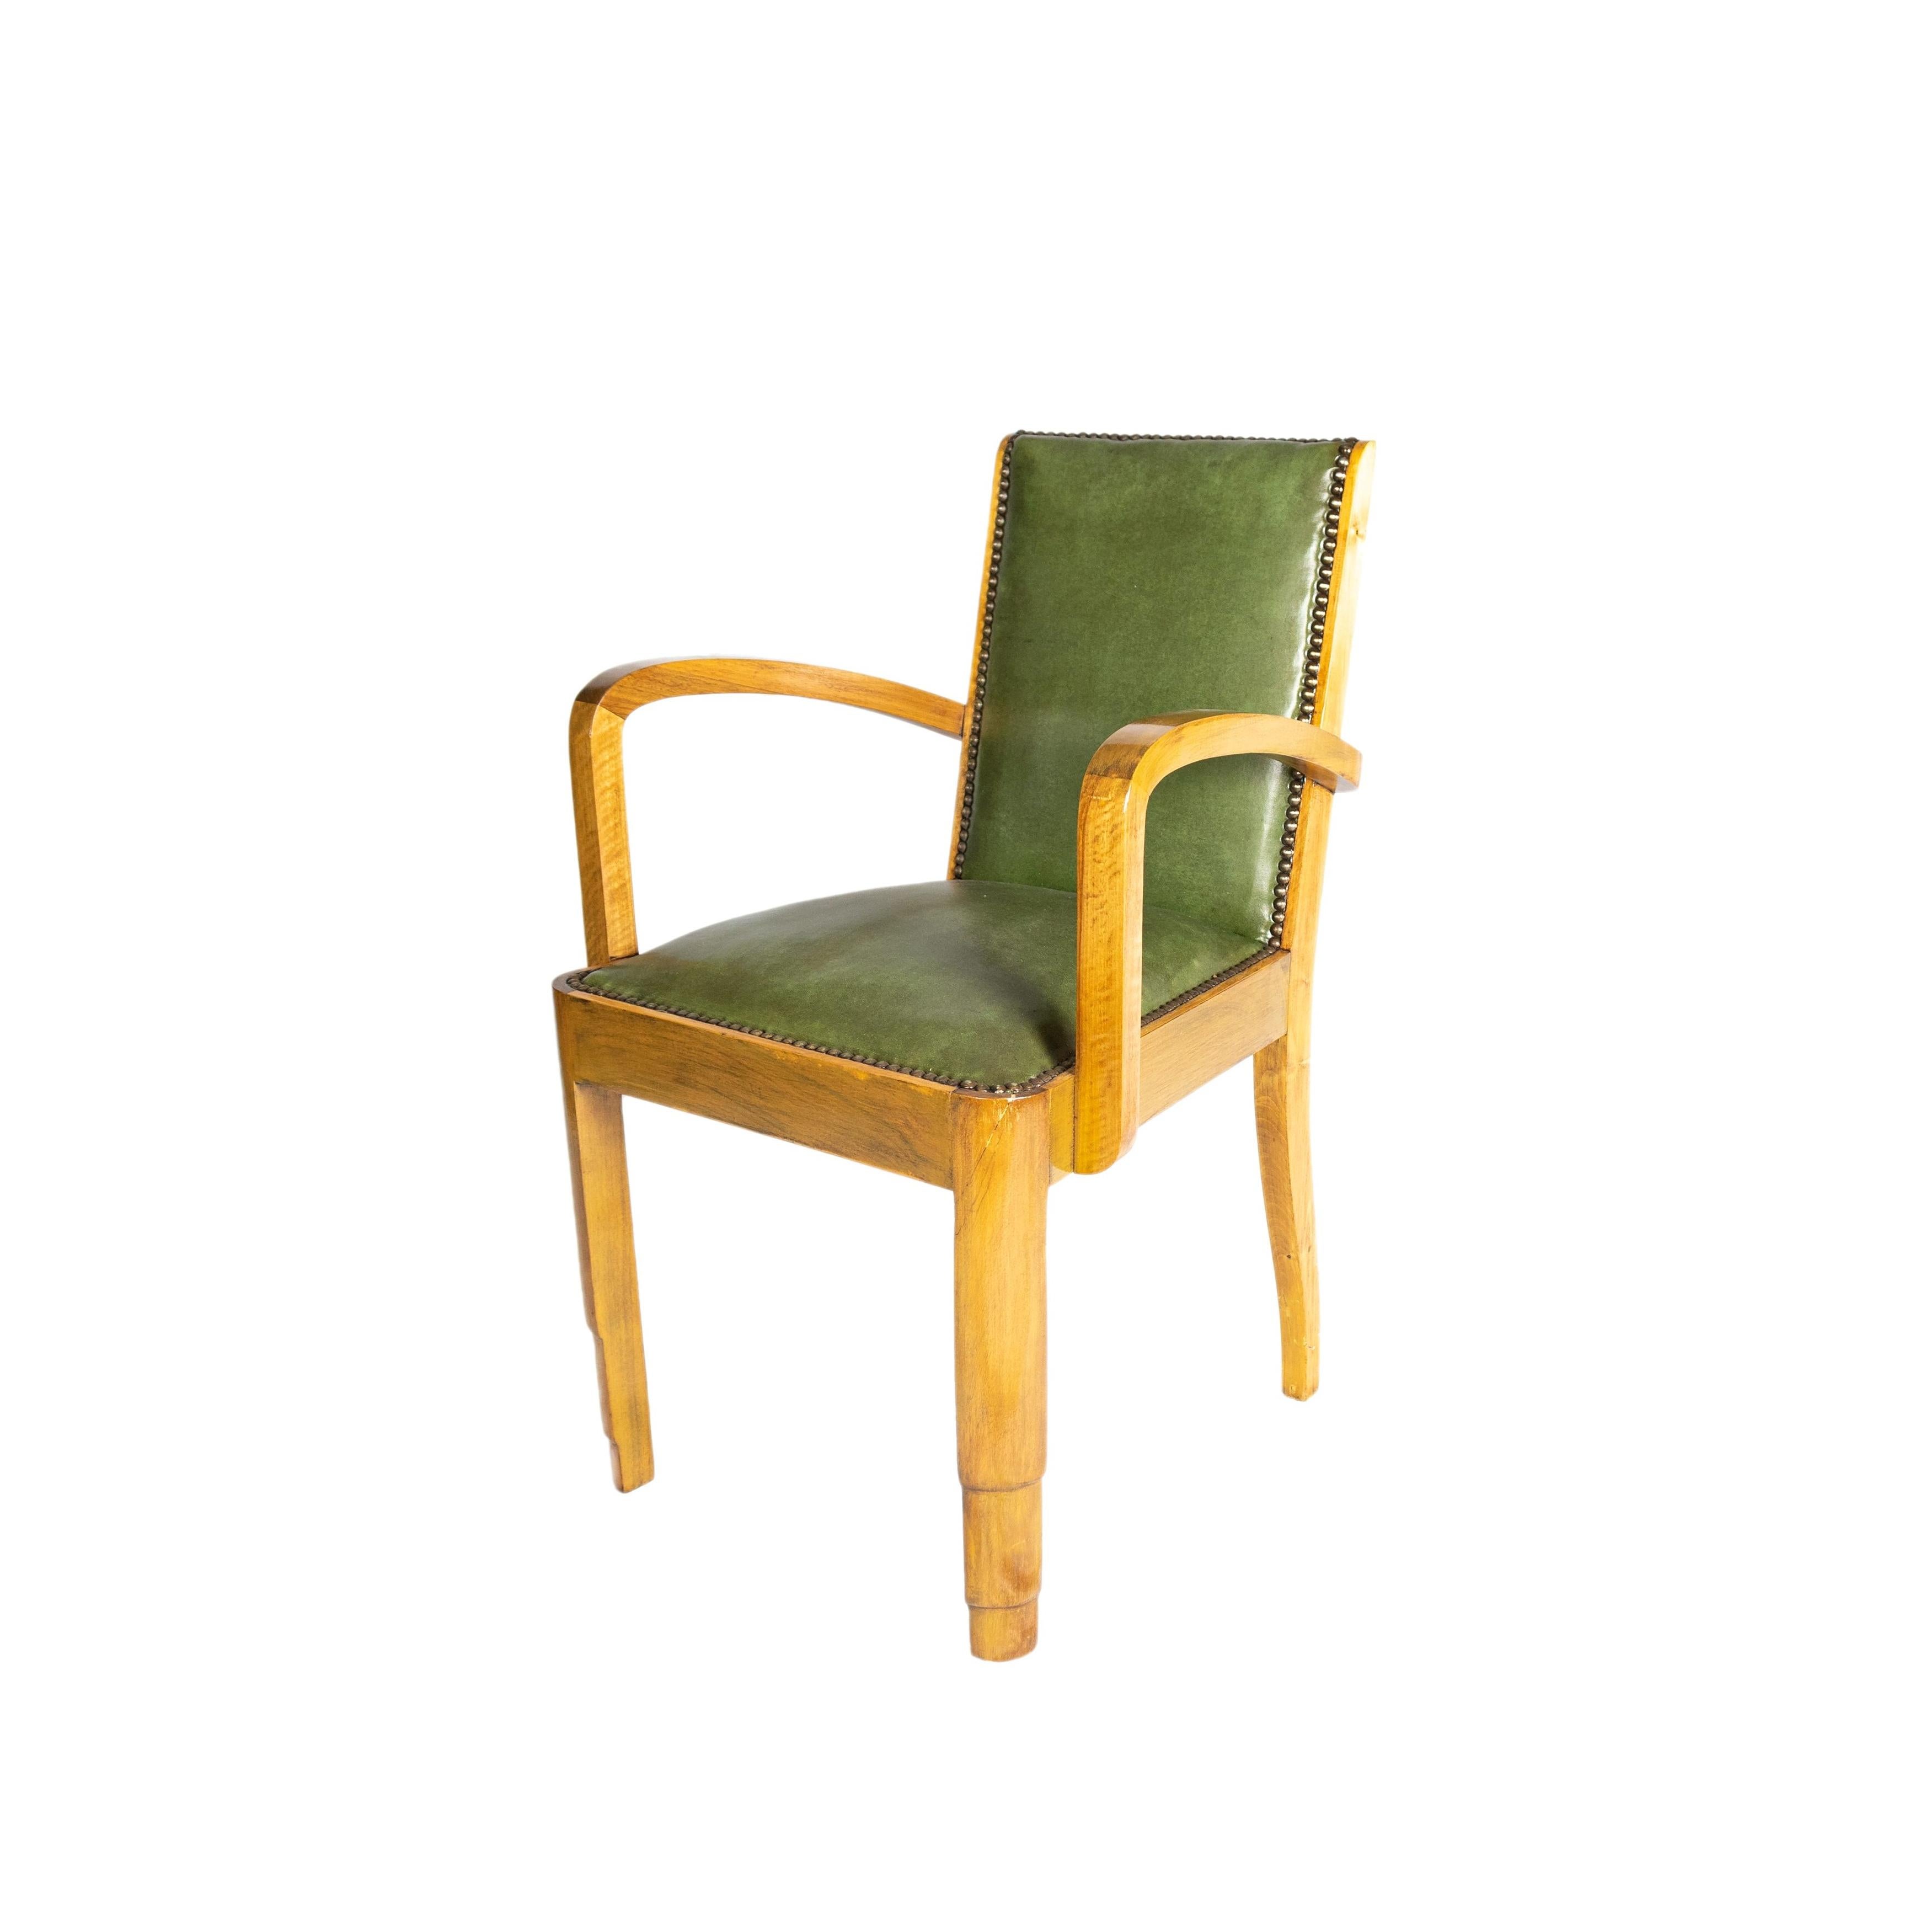 Ensemble de 8 chaises en bois d'acajou plaqué clair et garnies de cuir vert naturel et de clous traditionnels.
Deux chaises dans l'ensemble avec accoudoirs, fauteuils (voir photos).
Chaises solides, structures révisées par Carpenter.

Hauteur :